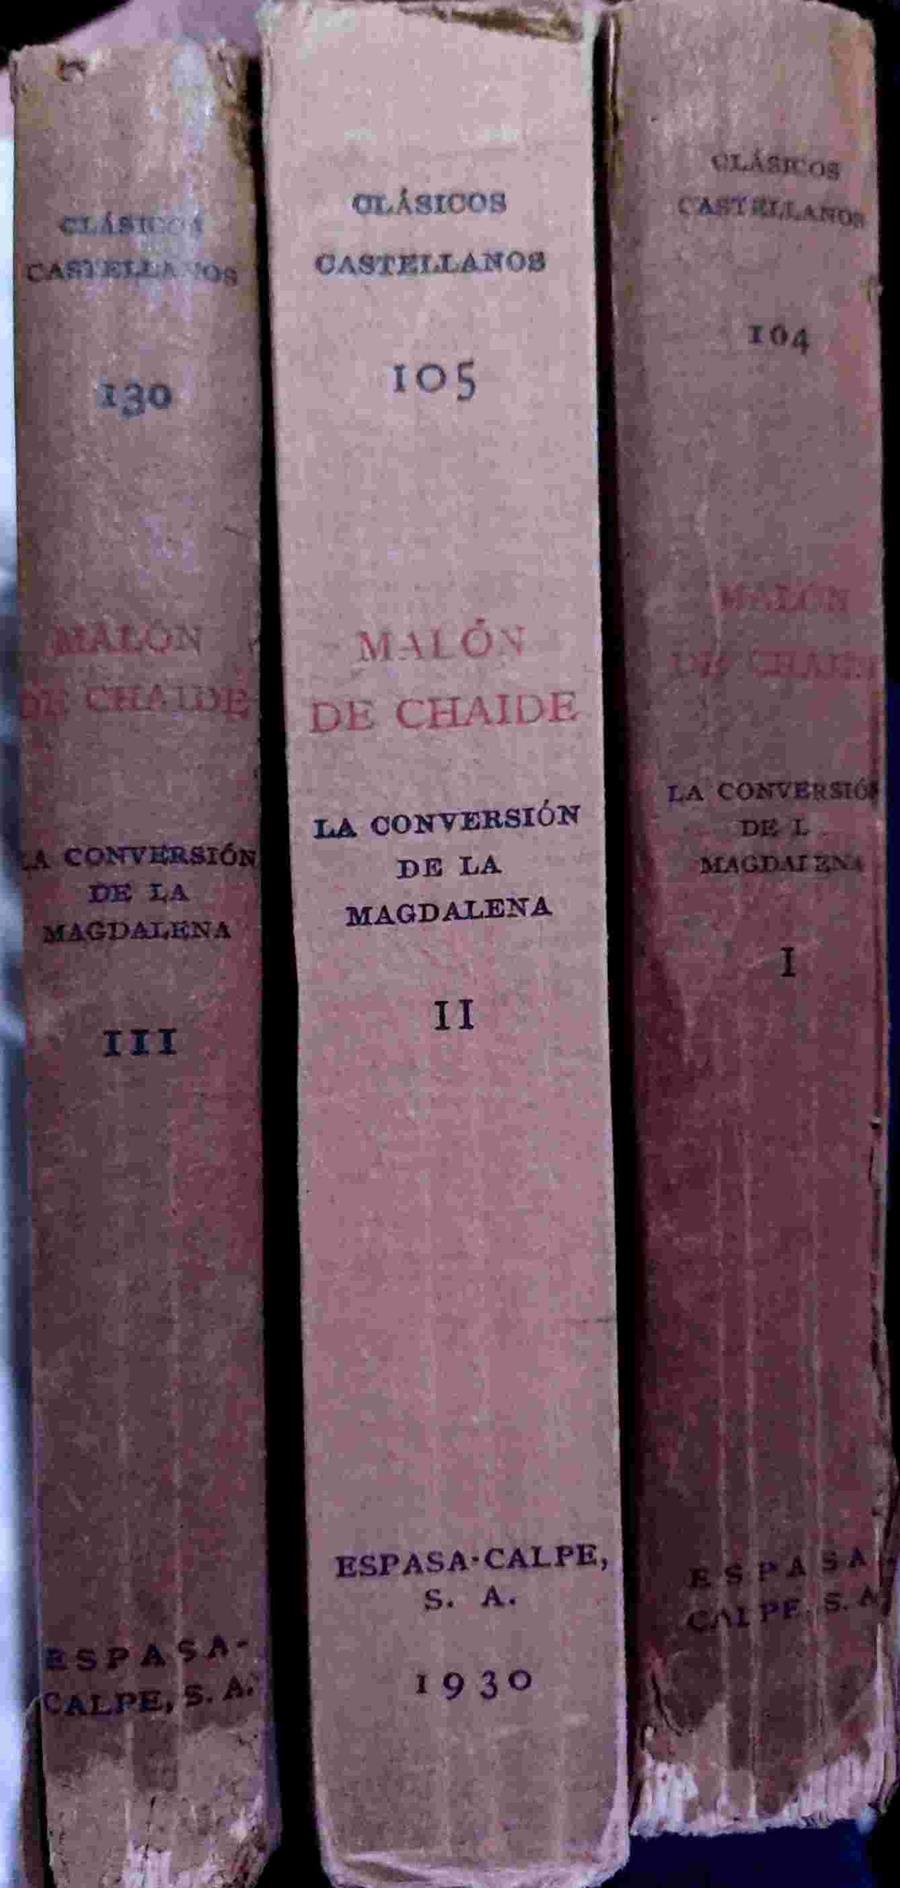 La conversión de la Magdalena I,II y III | 138626 | Malón de Chaide